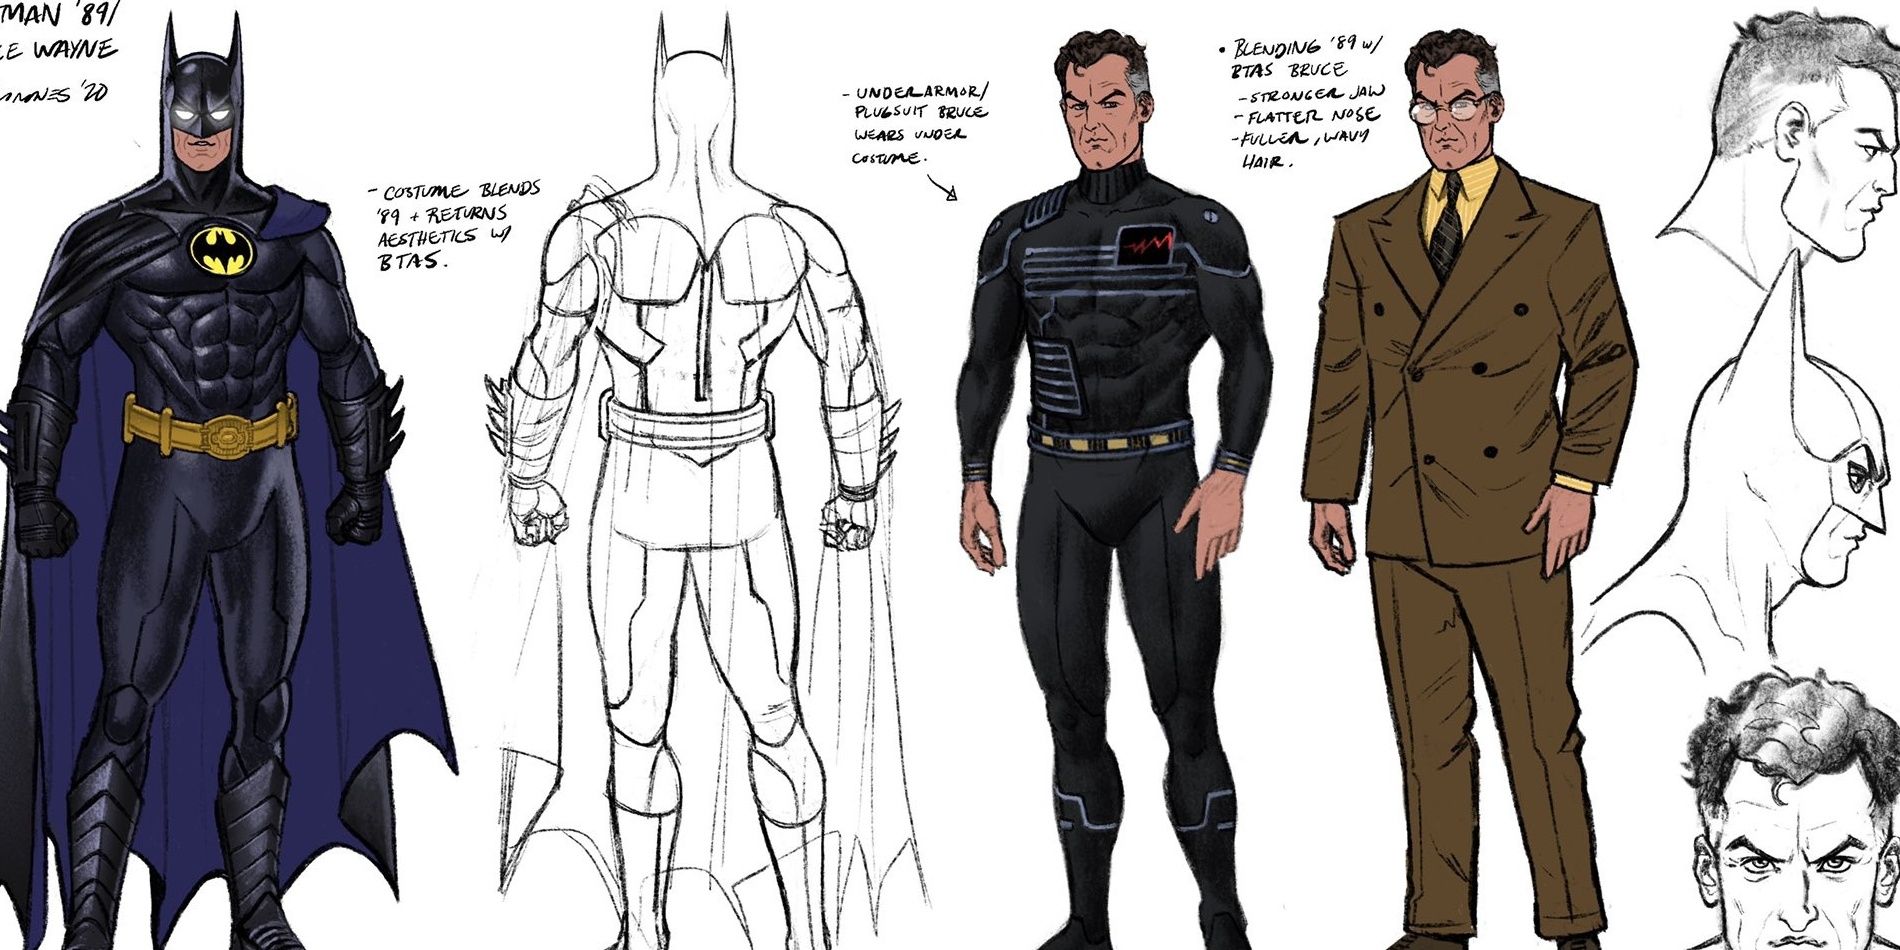 Character design of Bruce Wayne/Batman for the upcoming Batman '89 comic book series